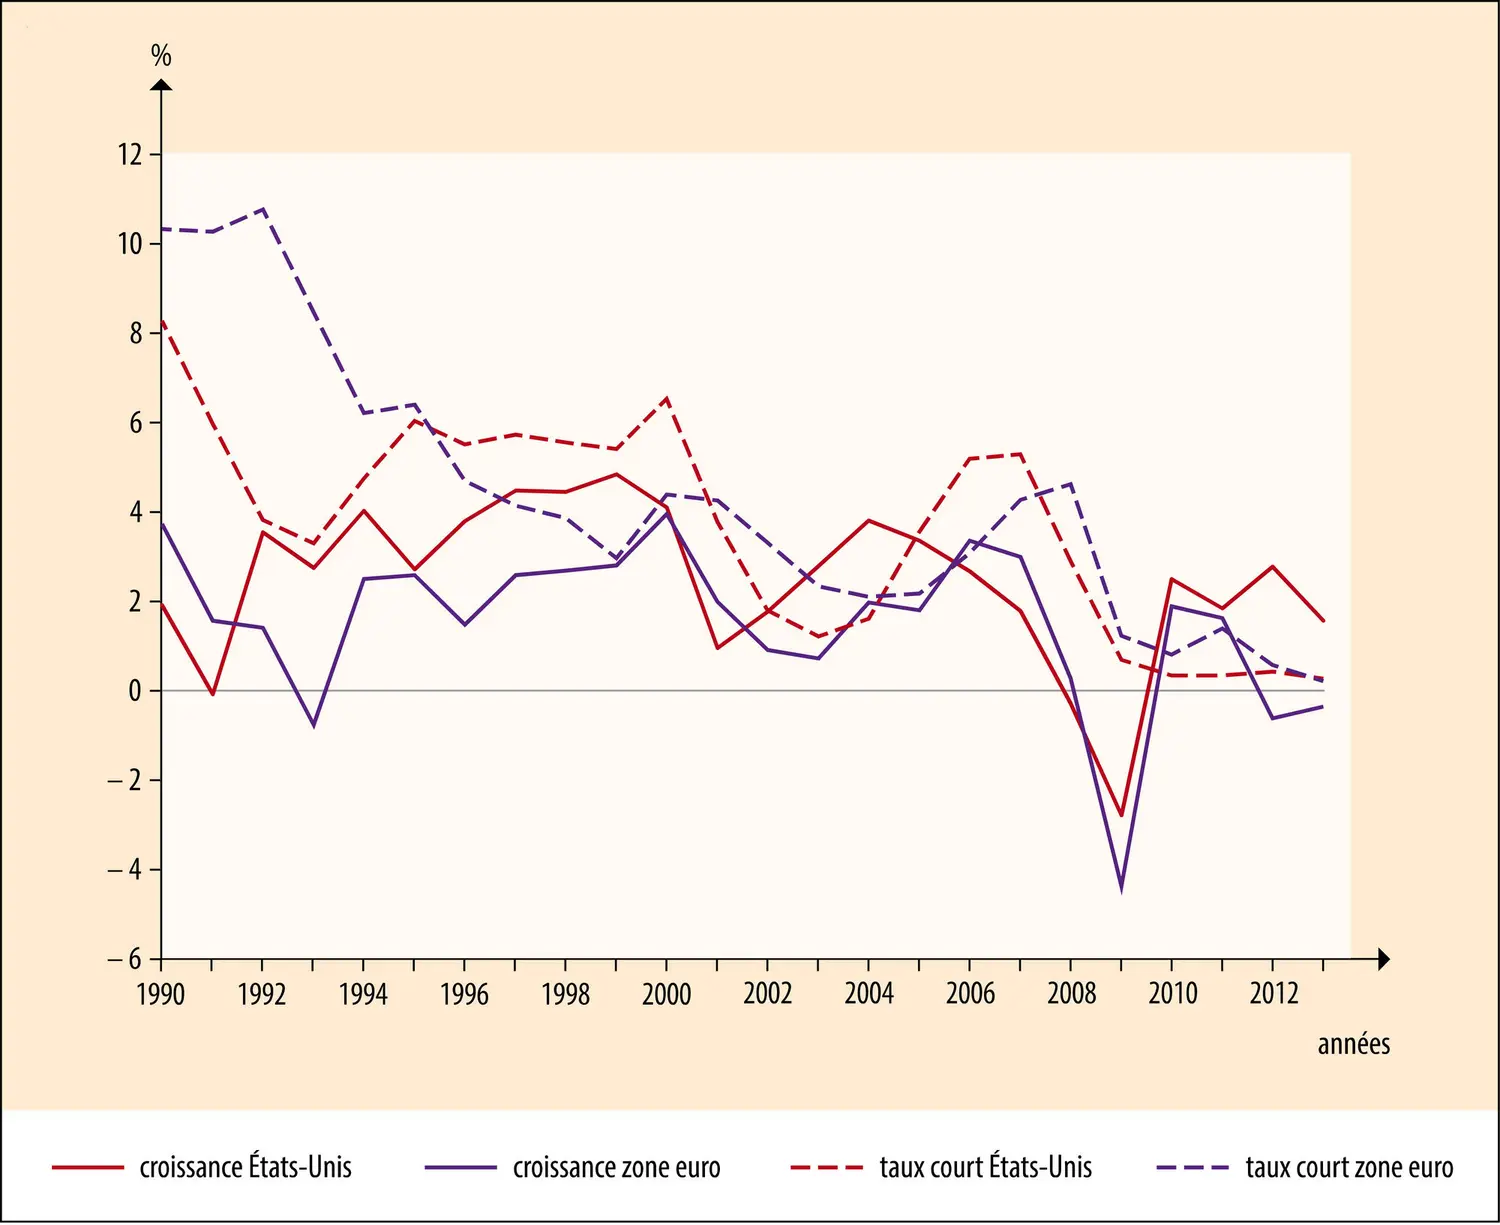 États-Unis - zone euro : taux court et croissance